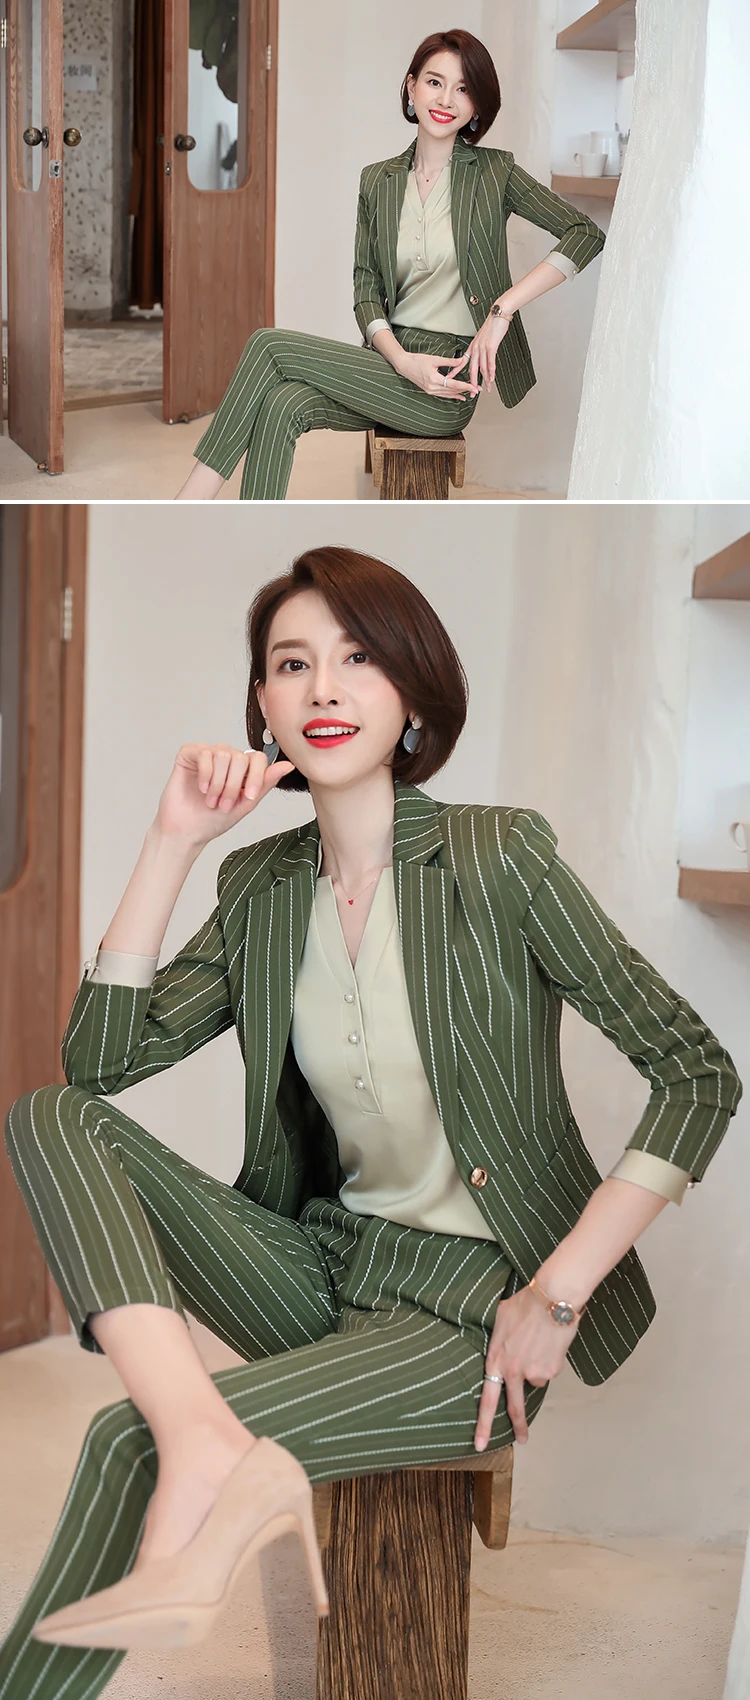 IZICFLY новые осенние зеленые полосатые Формальные женские костюмы женский костюм офисная форма дизайн элегантные деловые брюки костюм